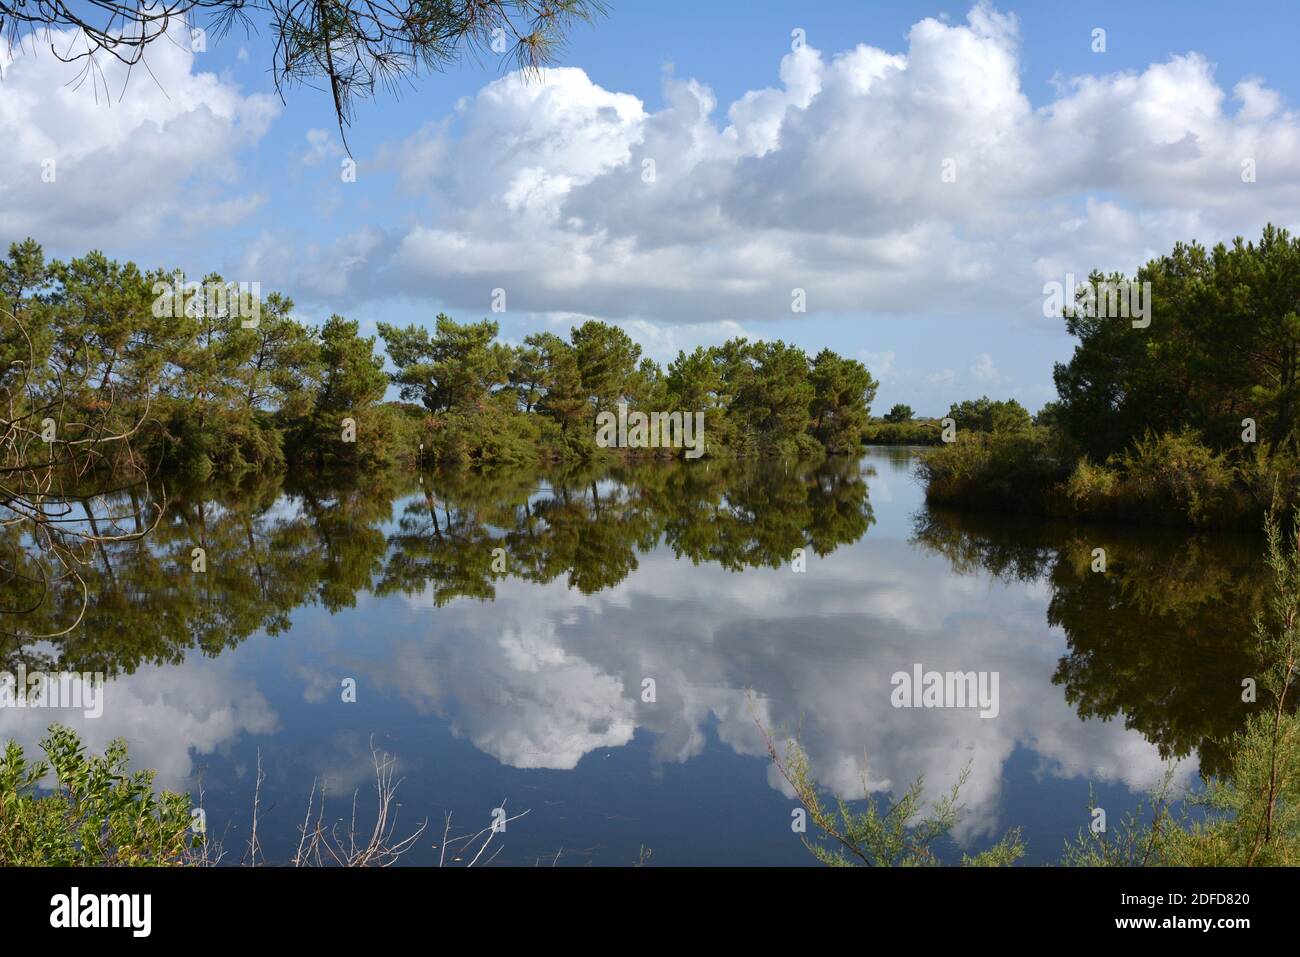 Frankreich, Aquitaine, Le Teich, ein Meerteich in der Bucht von Arcachon mit herrlichen Reflexen der Wolken und der Bäume im Wasser. Stockfoto